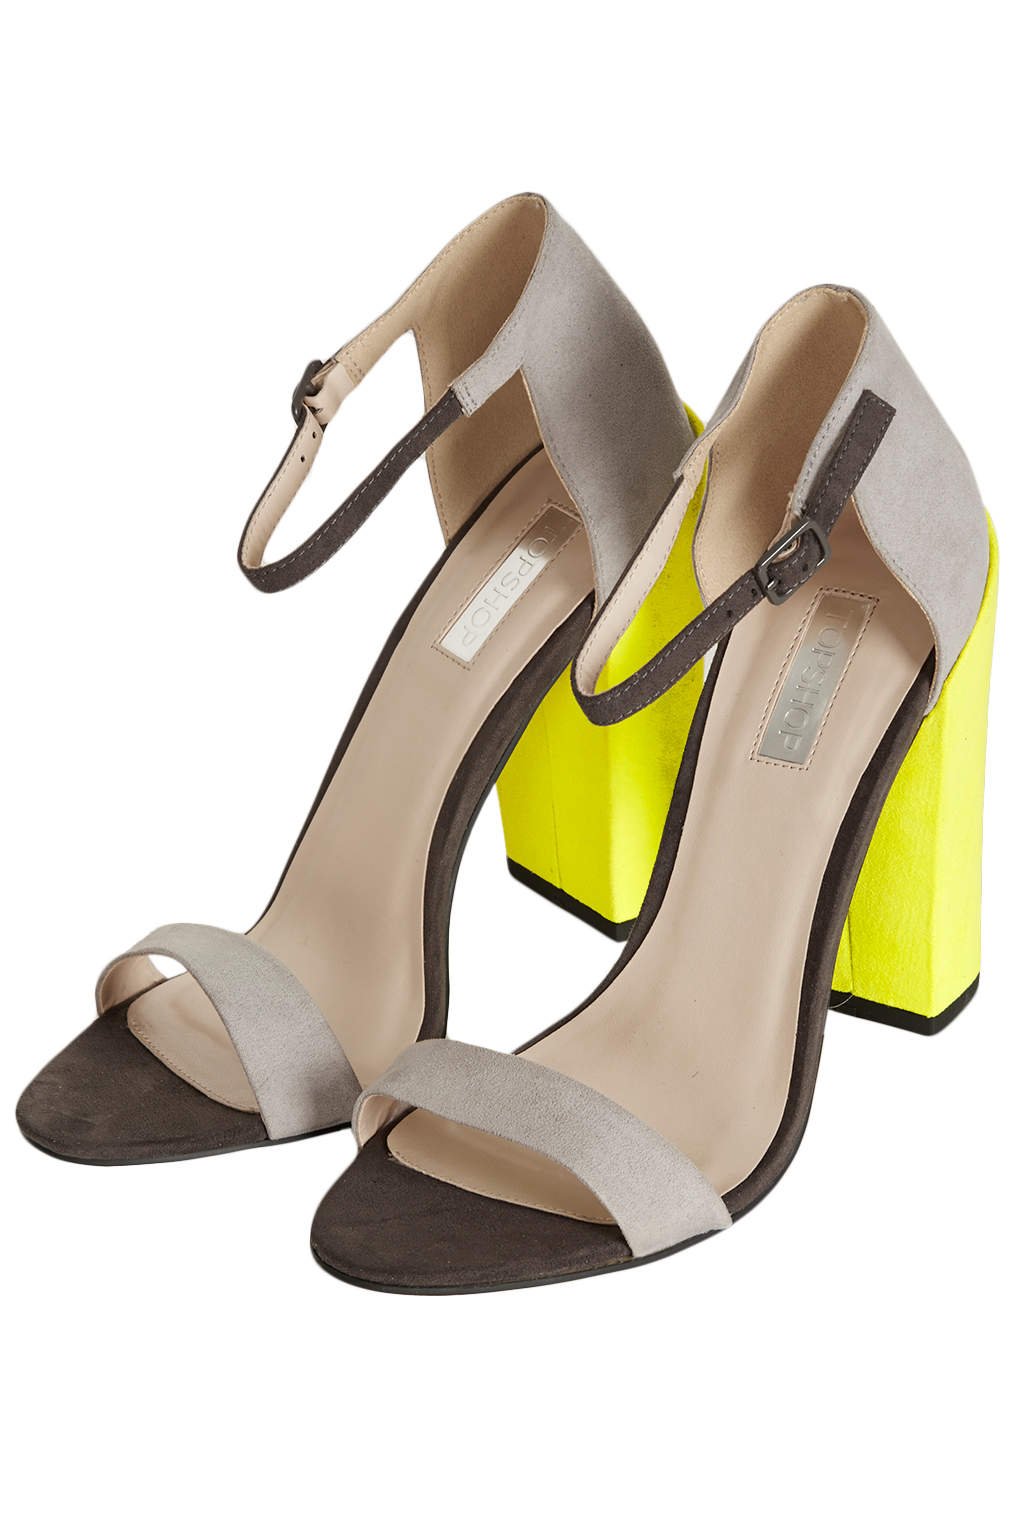 Lyst - Topshop Ratchet Block Heel Sandals in Yellow